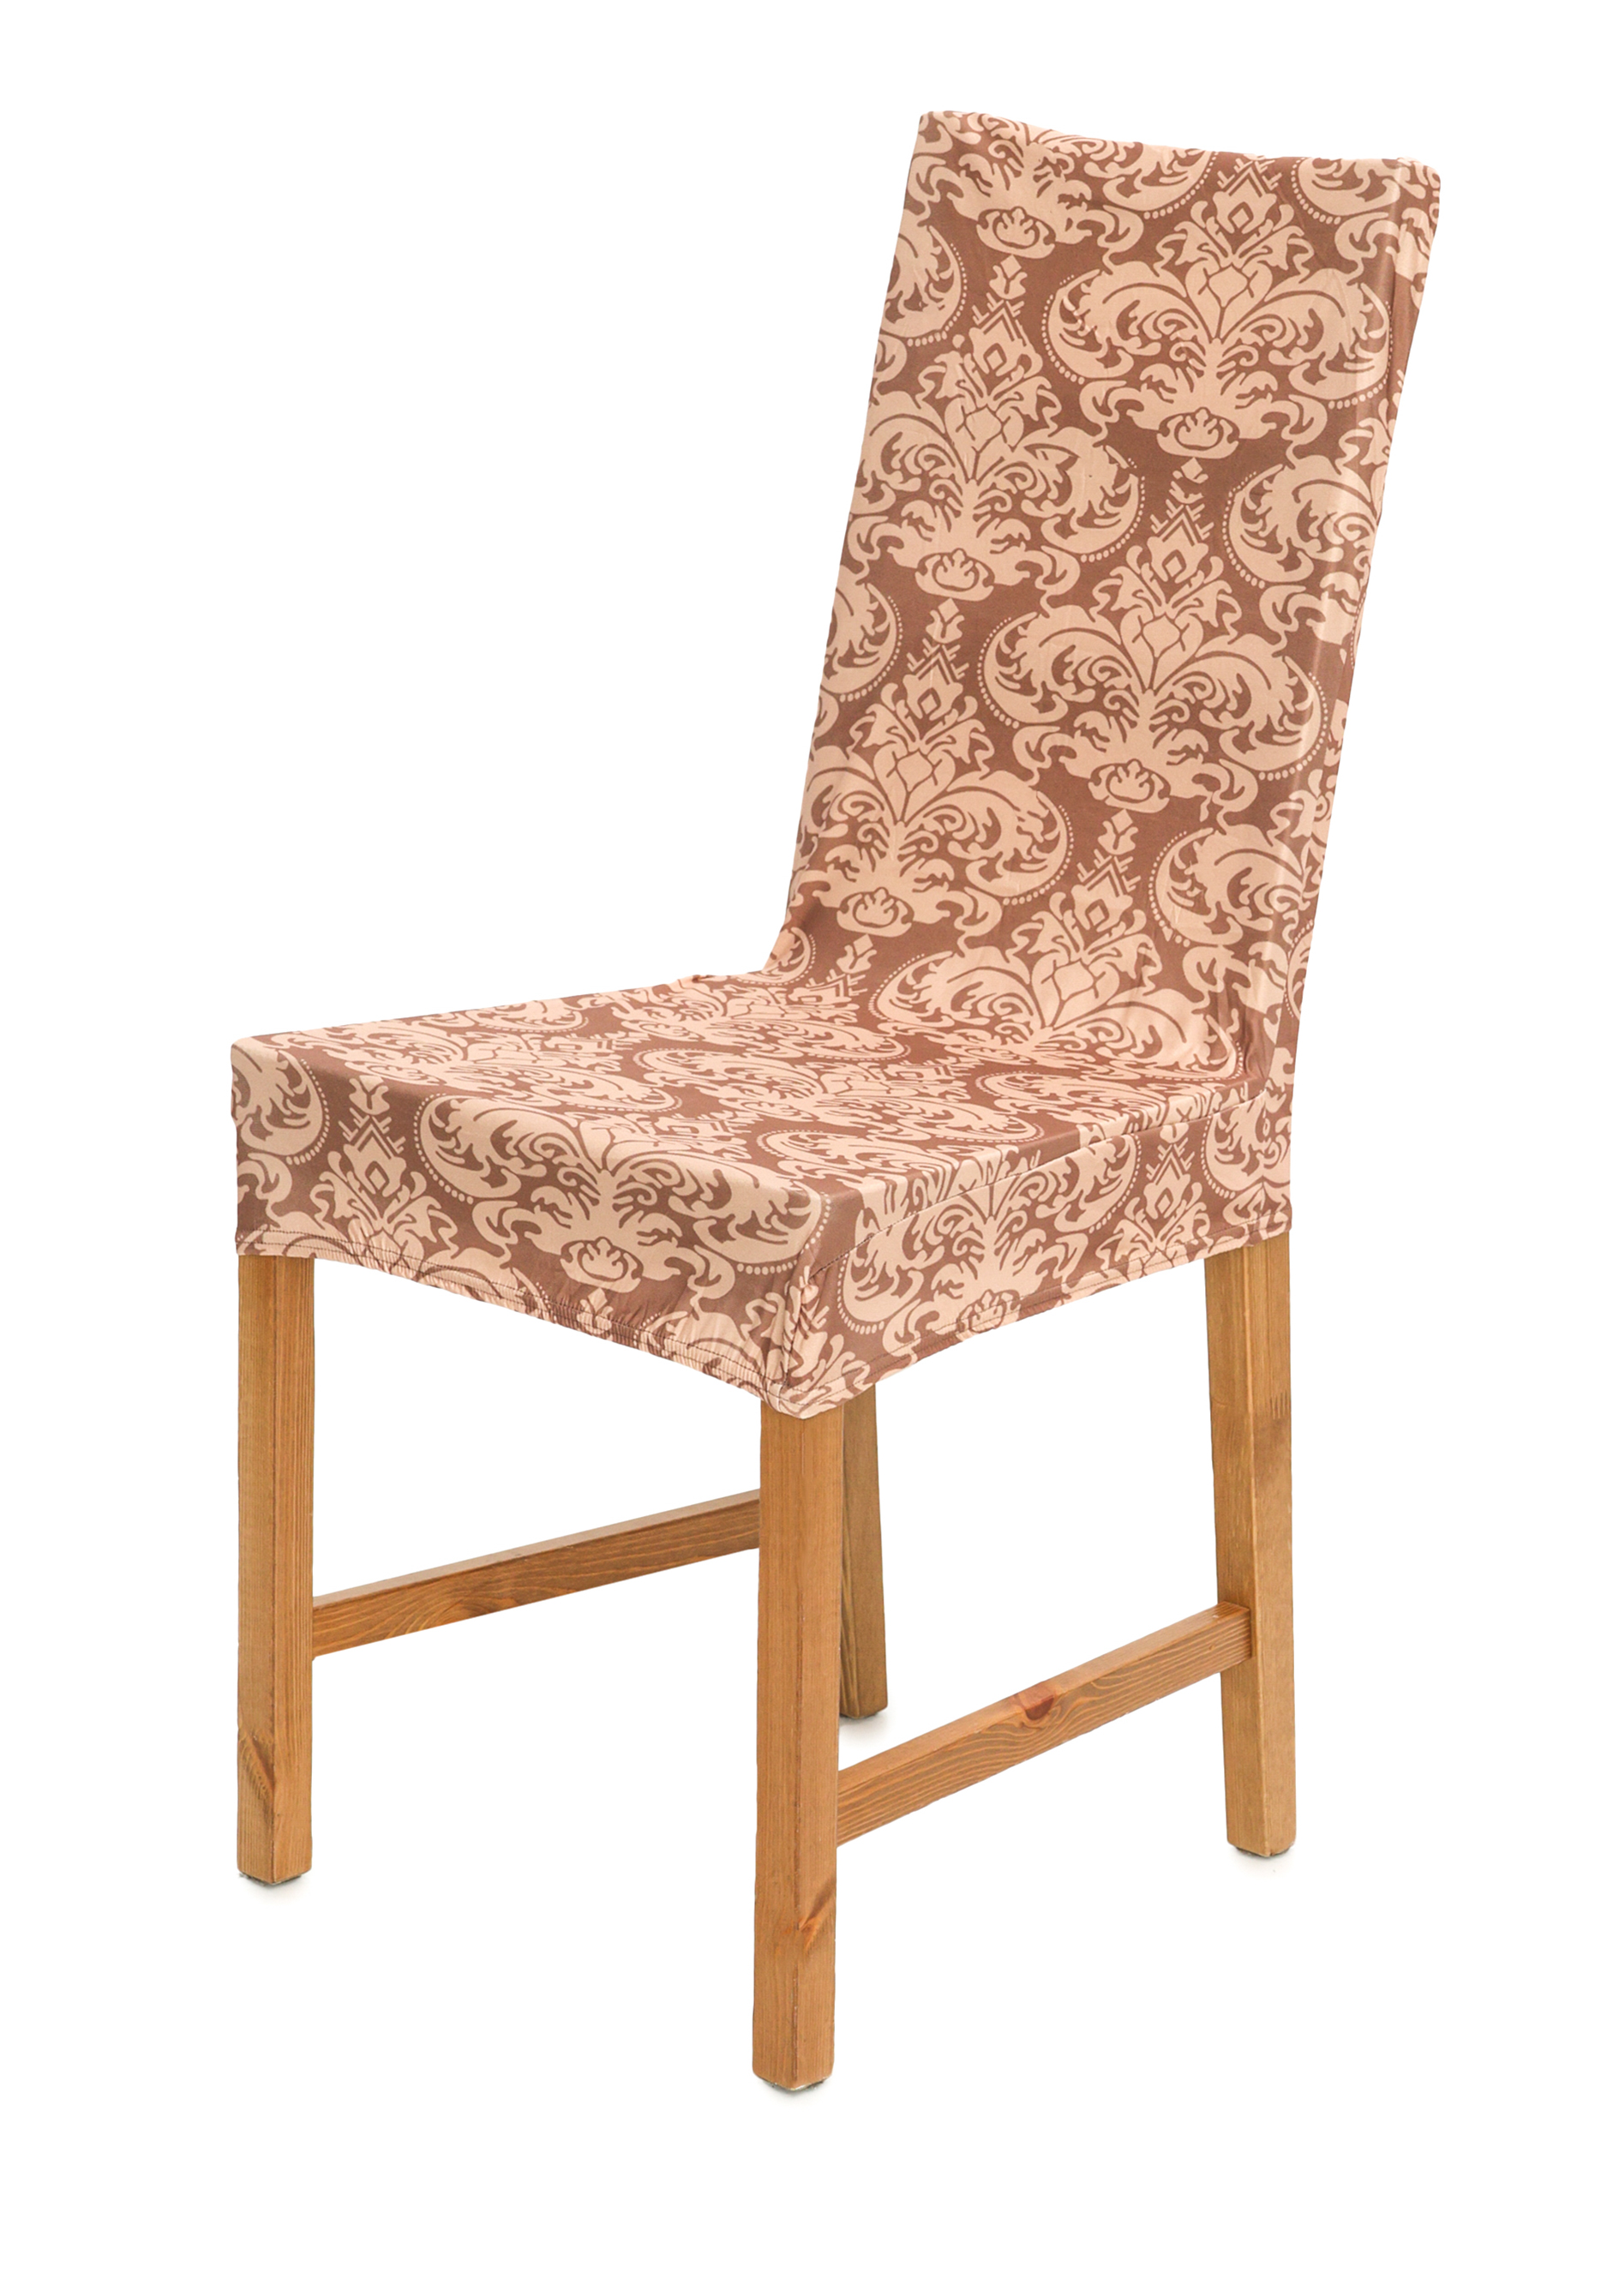 Чехол для стула Кармен однотонный простой эластичный чехол из спандекса для стула чехол для ресторана свадьбы банкета отеля сиамского стула